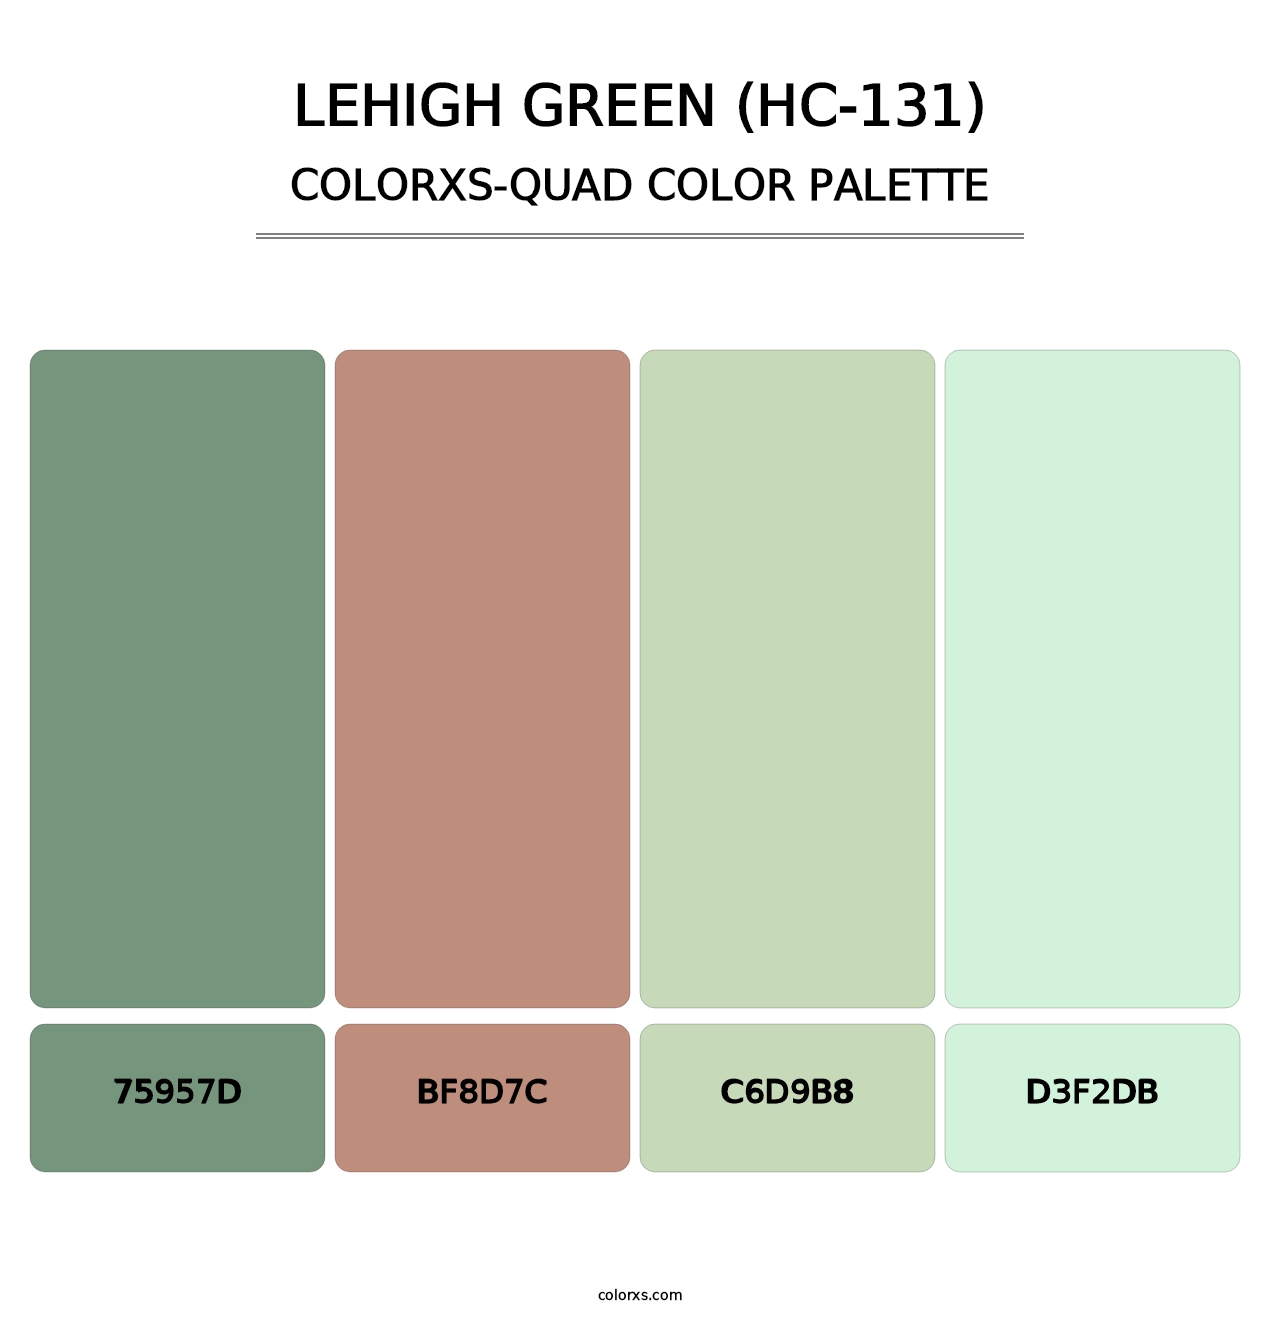 Lehigh Green (HC-131) - Colorxs Quad Palette